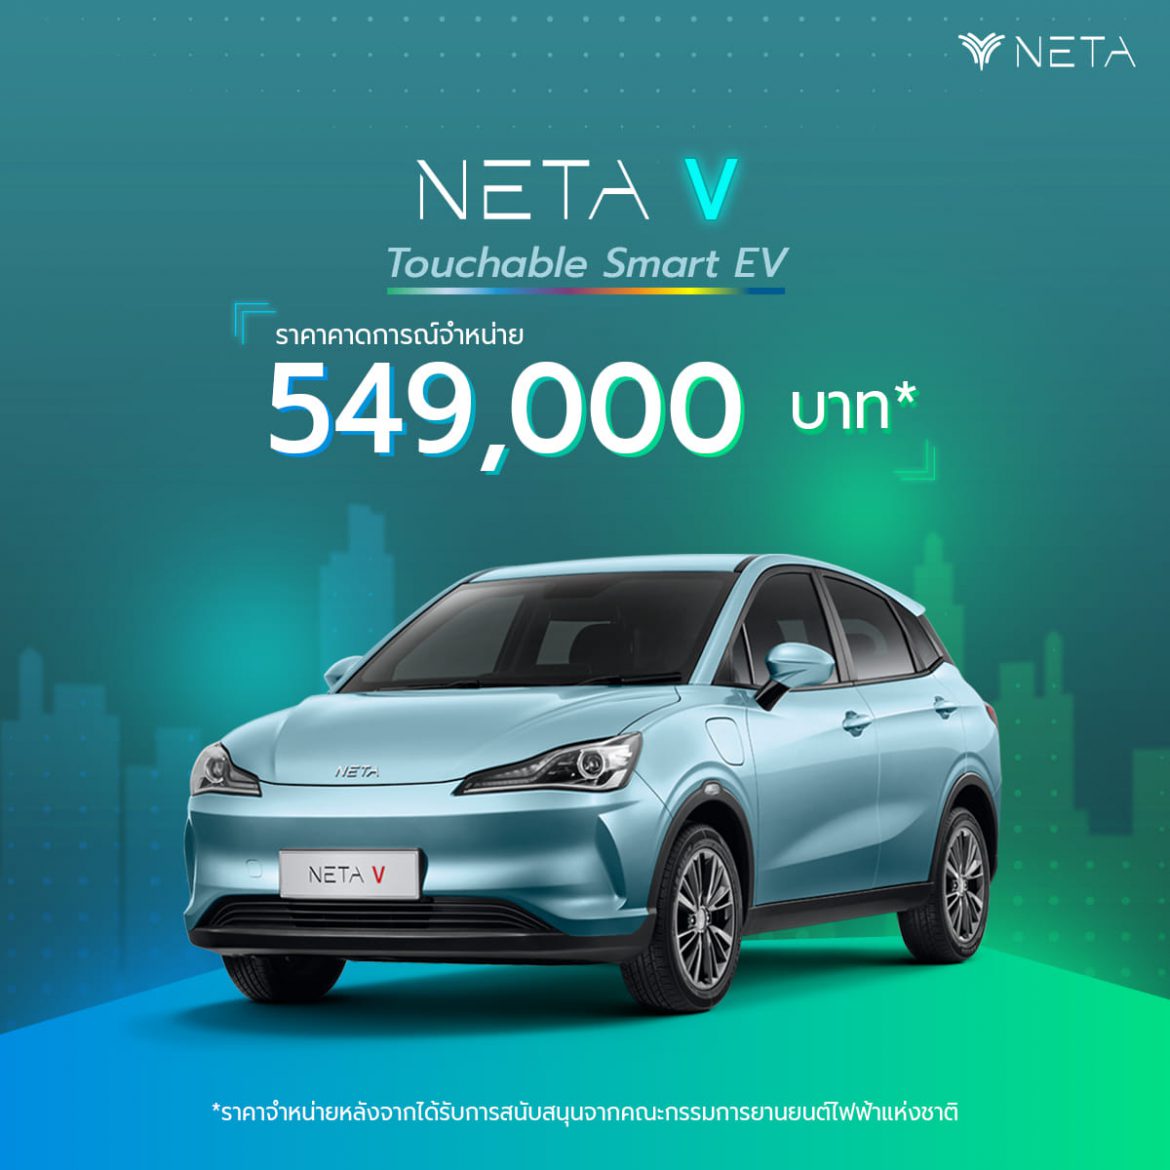 NETA V รถยนต์พลังงานไฟฟ้า 100% พร้อมแล้วที่จะให้คุณเป็นเจ้าของ ในราคาคาดการณ์จำหน่าย 549,000 บาท*